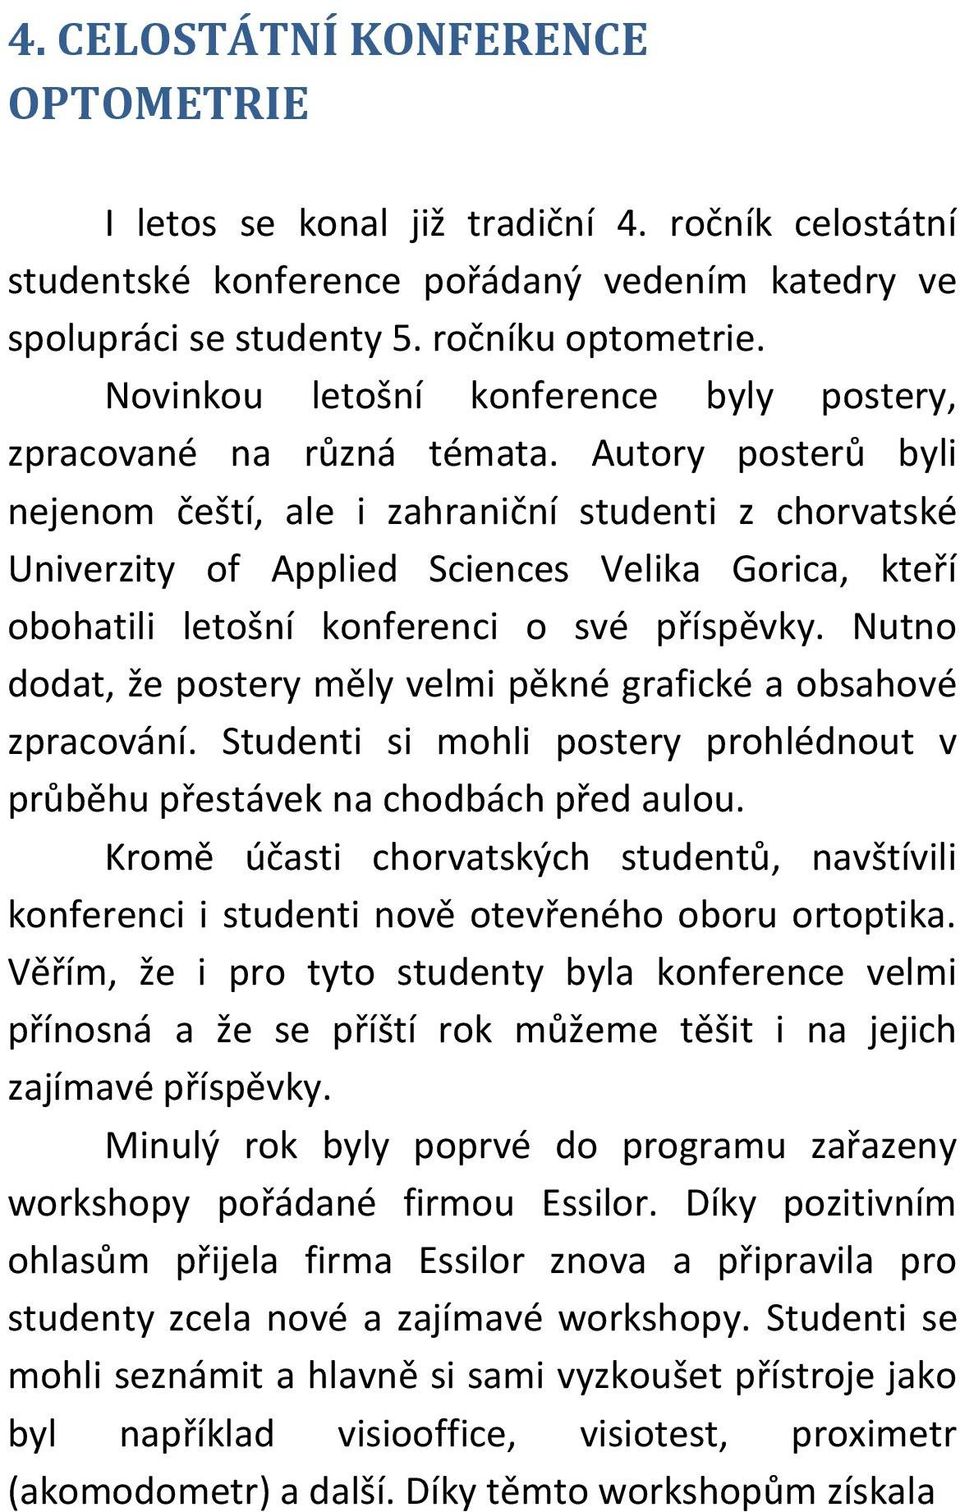 Autory posterů byli nejenom čeští, ale i zahraniční studenti z chorvatské Univerzity of Applied Sciences Velika Gorica, kteří obohatili letošní konferenci o své příspěvky.